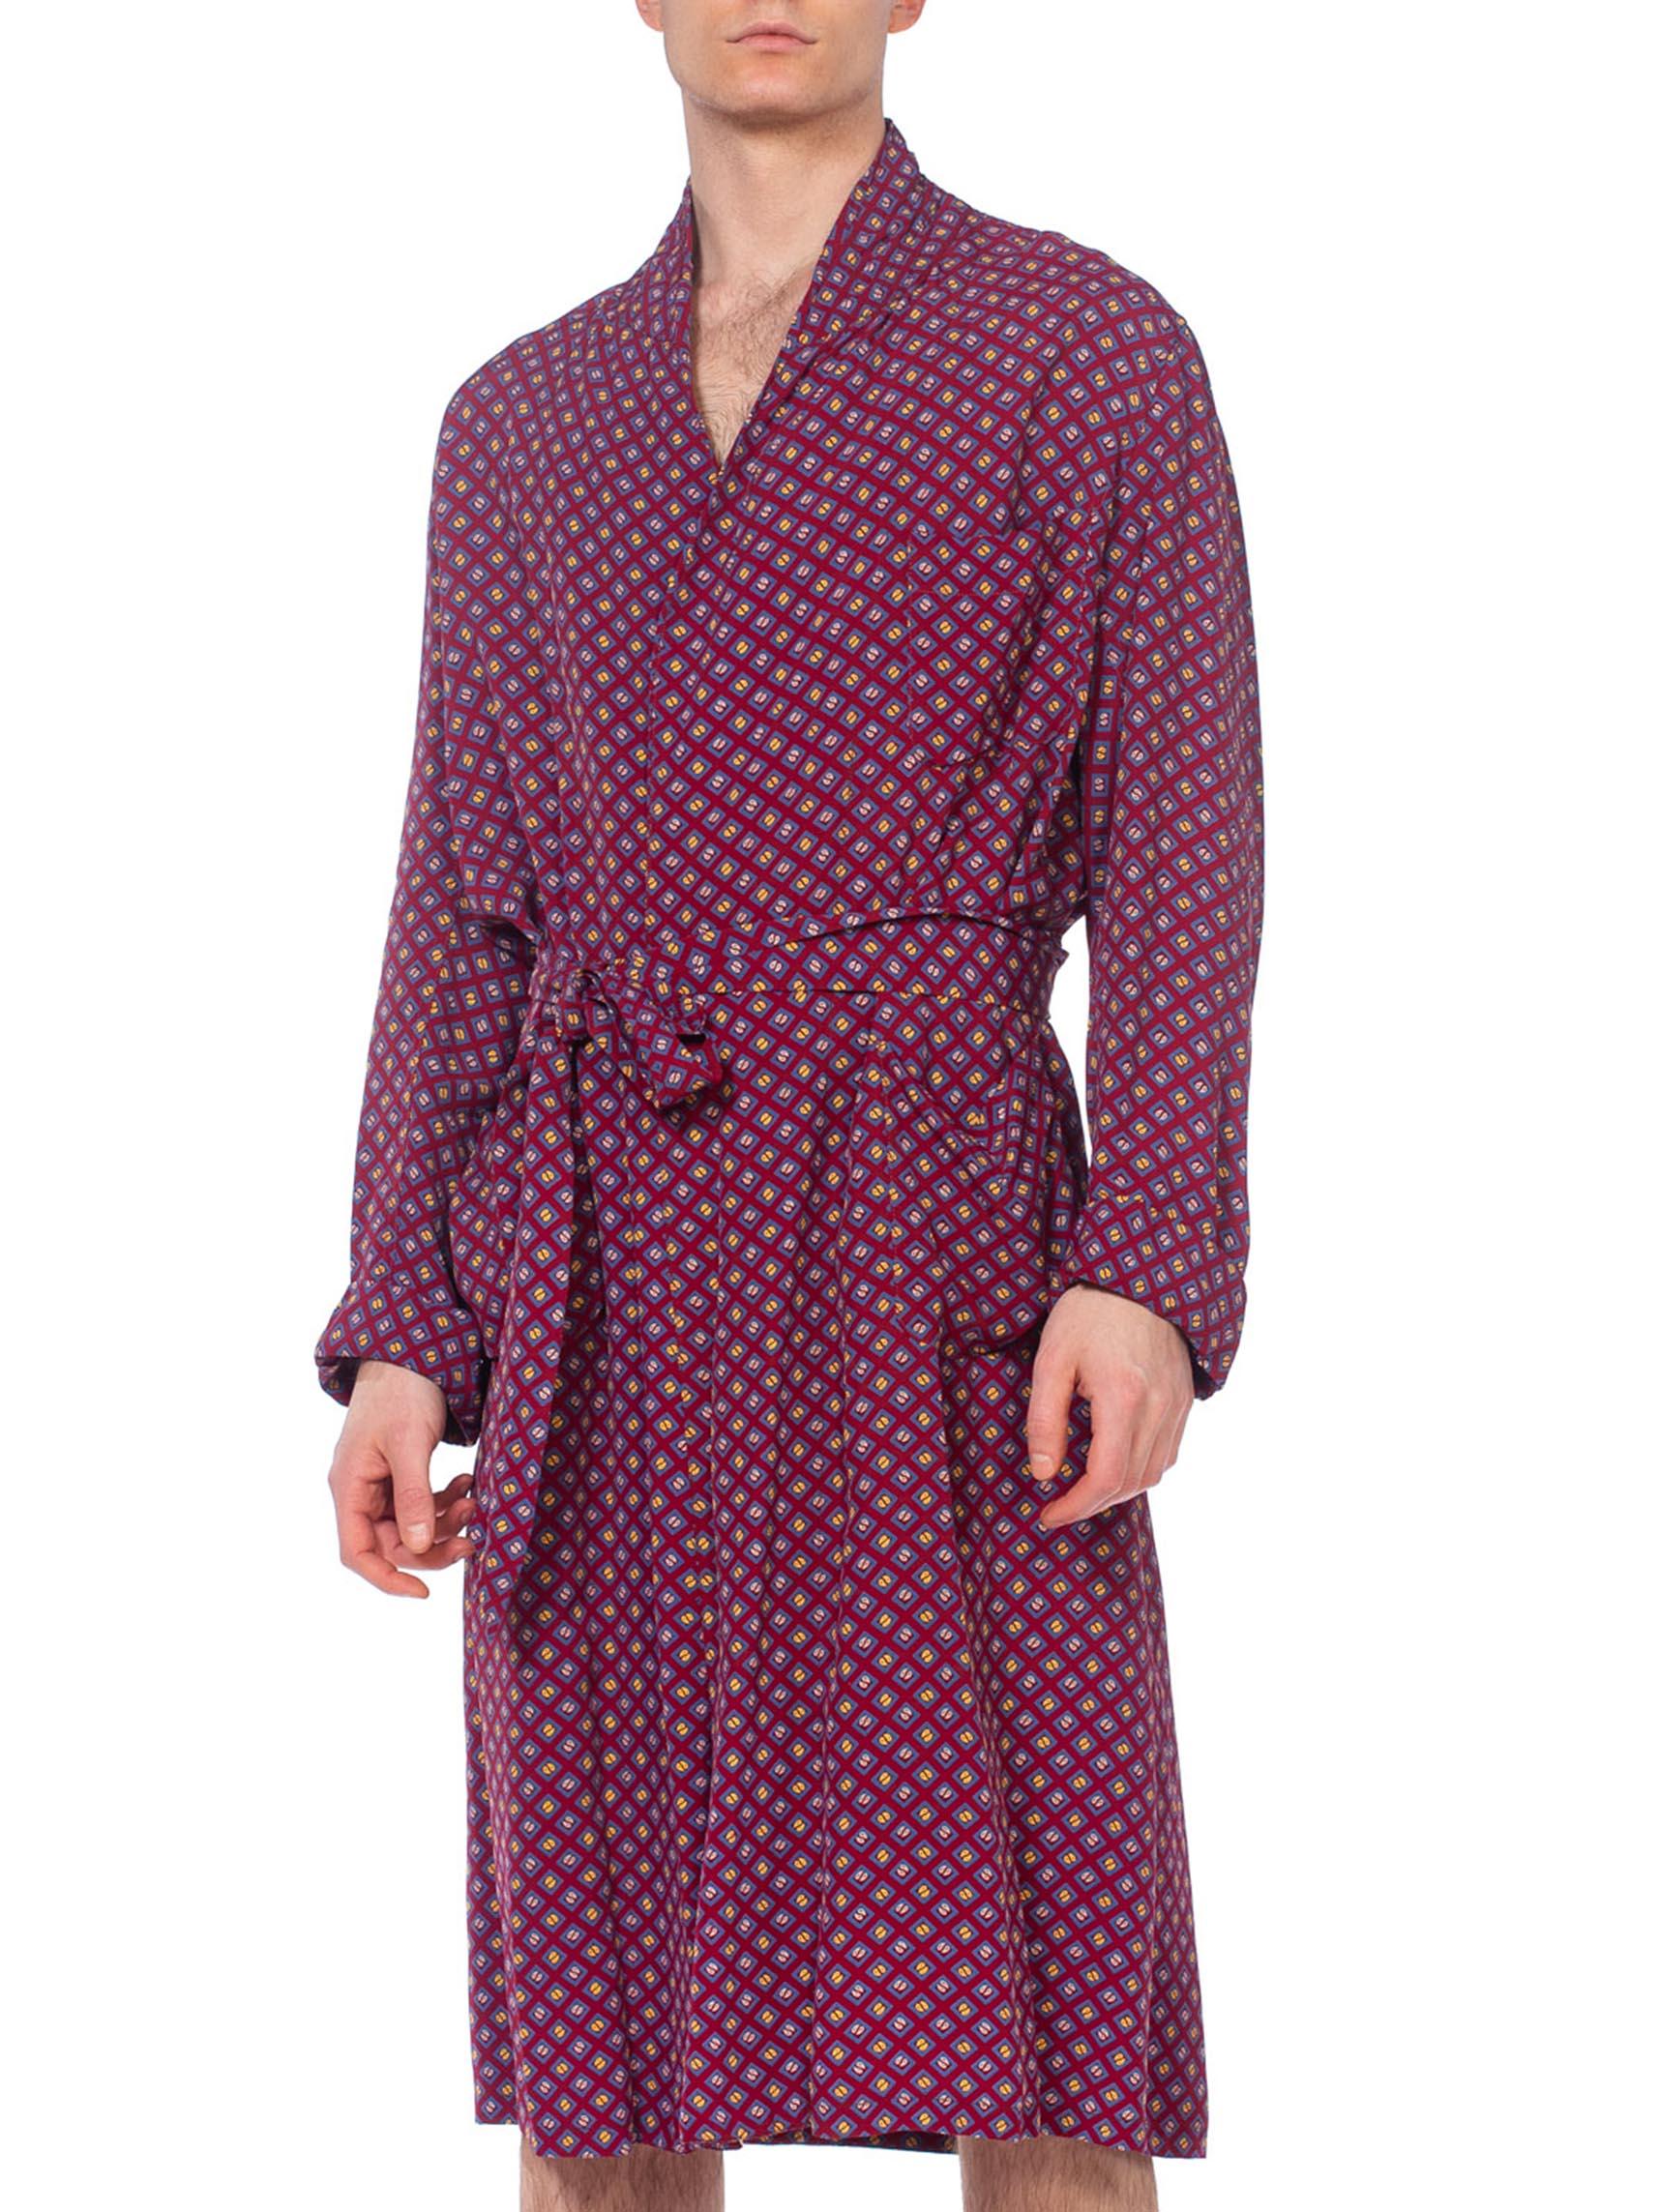 robe d'homme 1940S en rayonne bourguignonne à imprimé géométrique